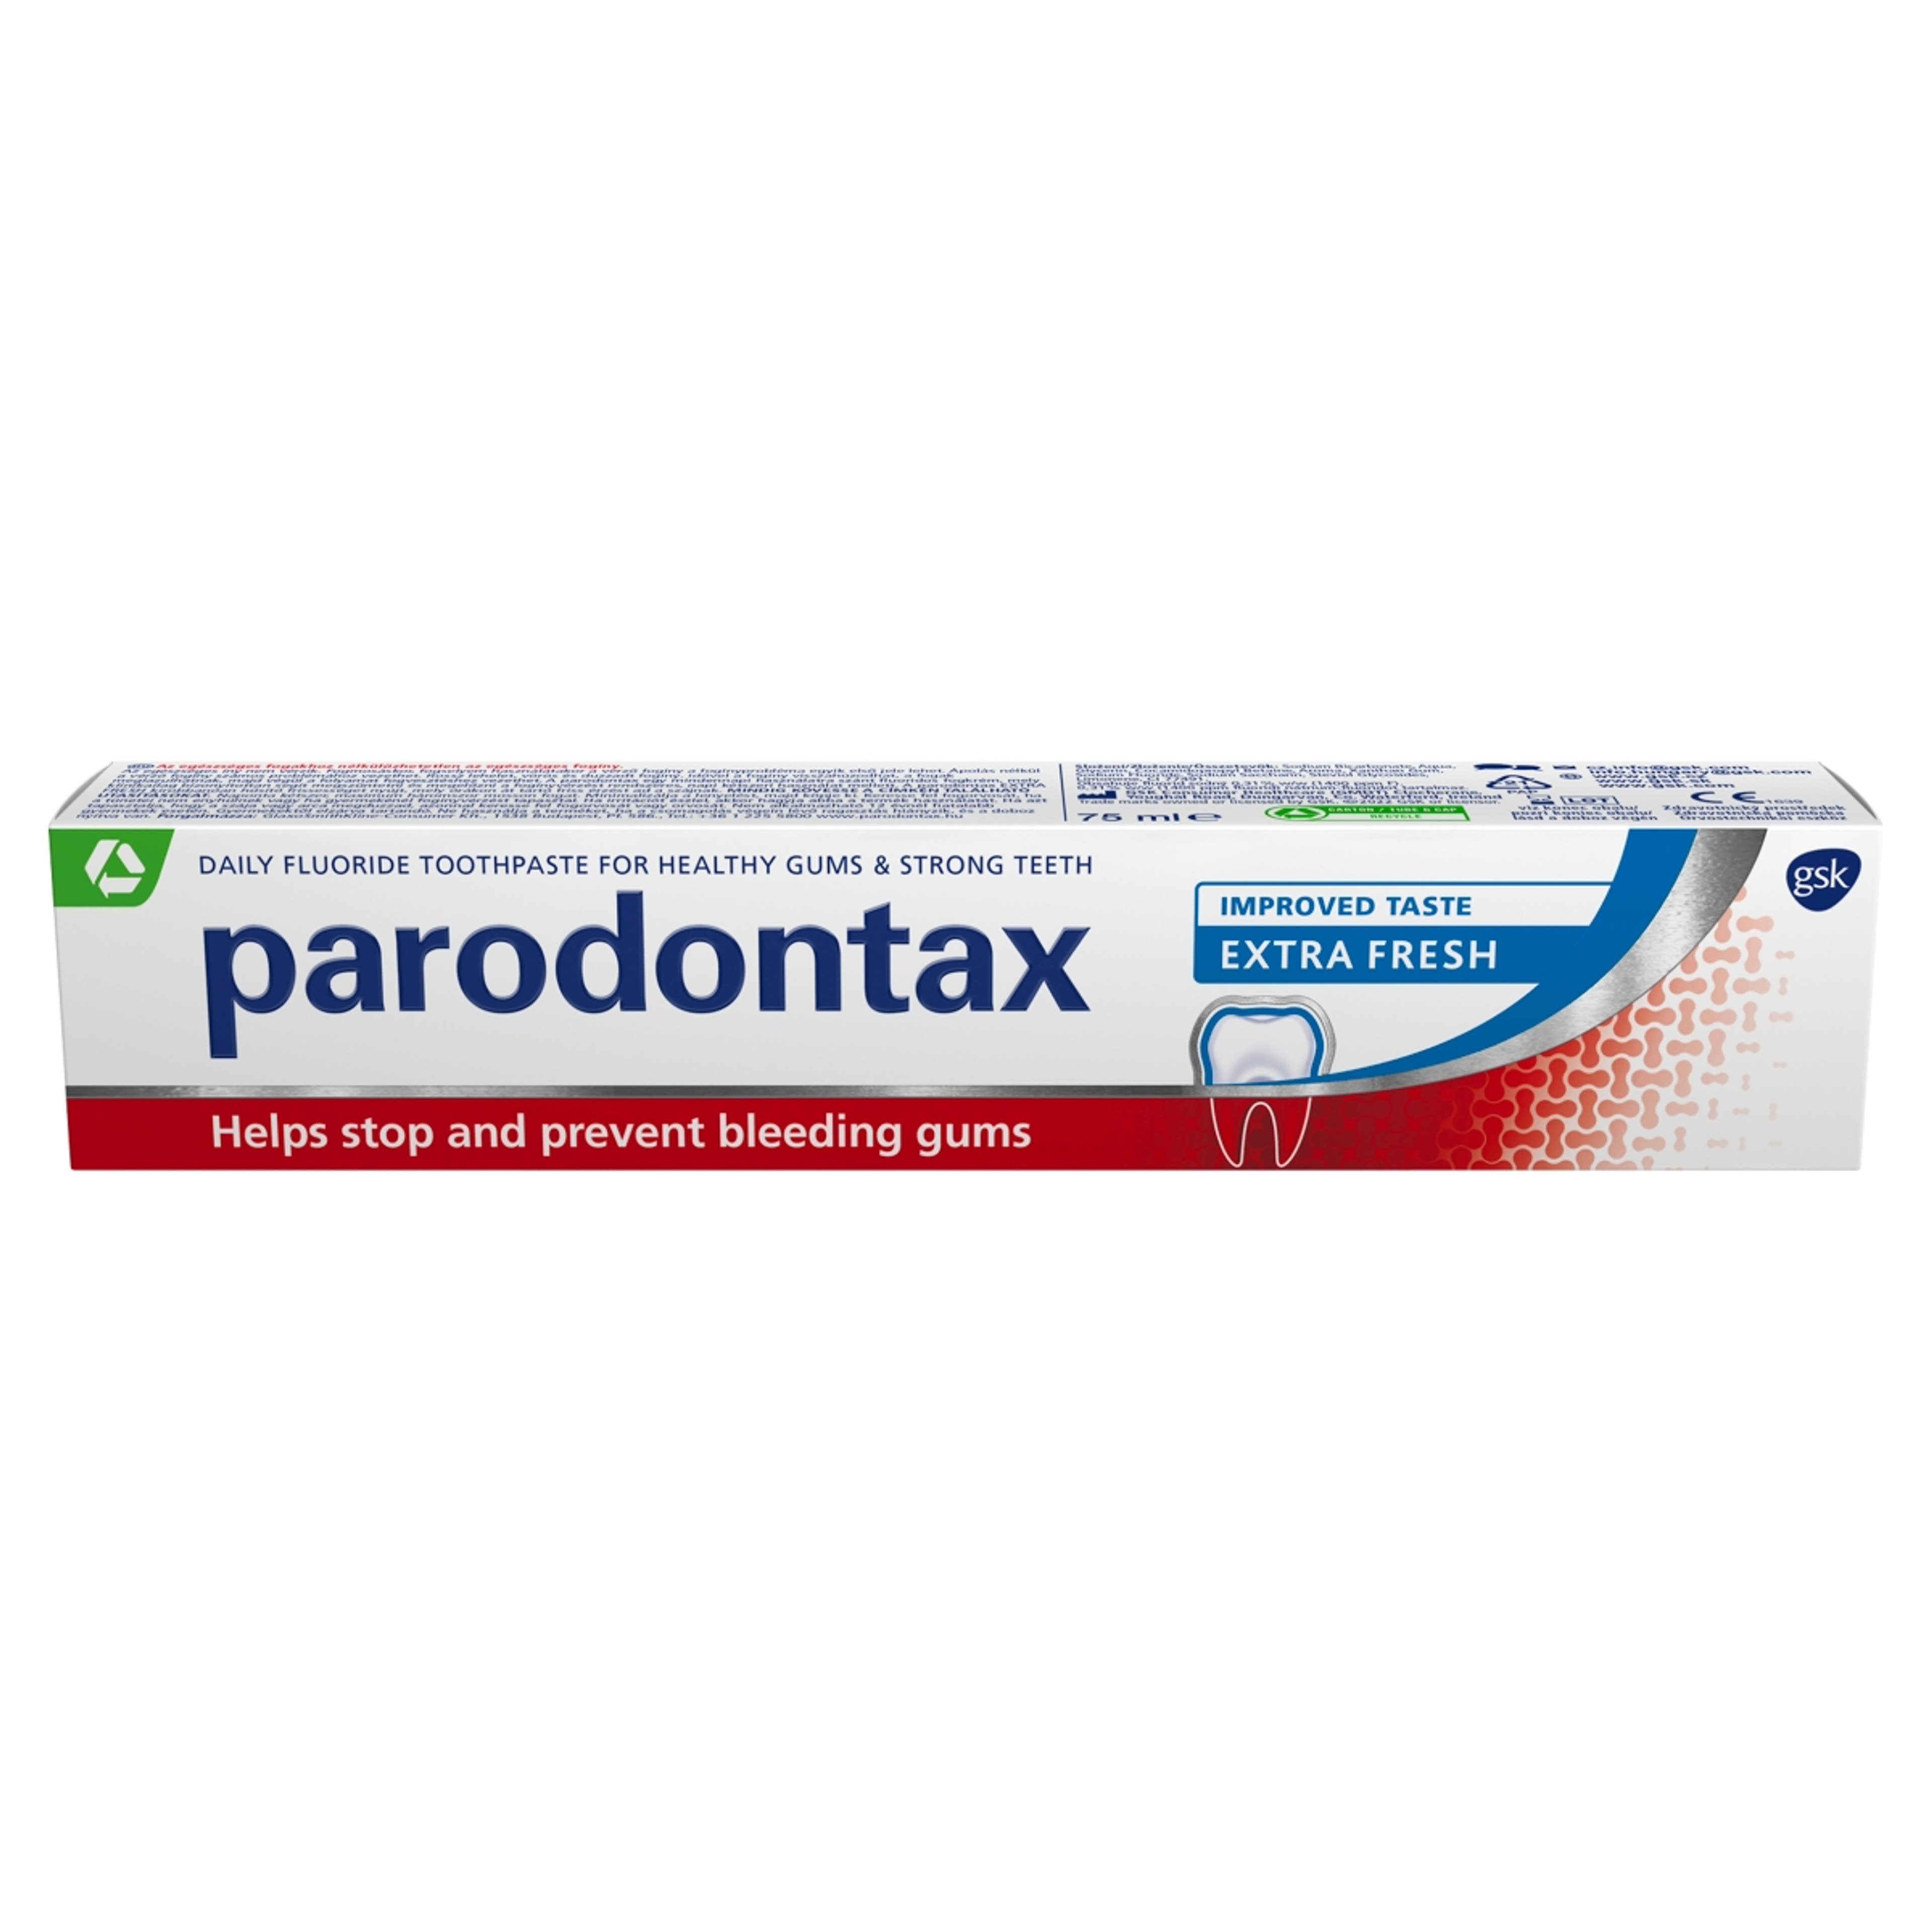 Parodontax Extra Fresh fogkrém - 75 ml